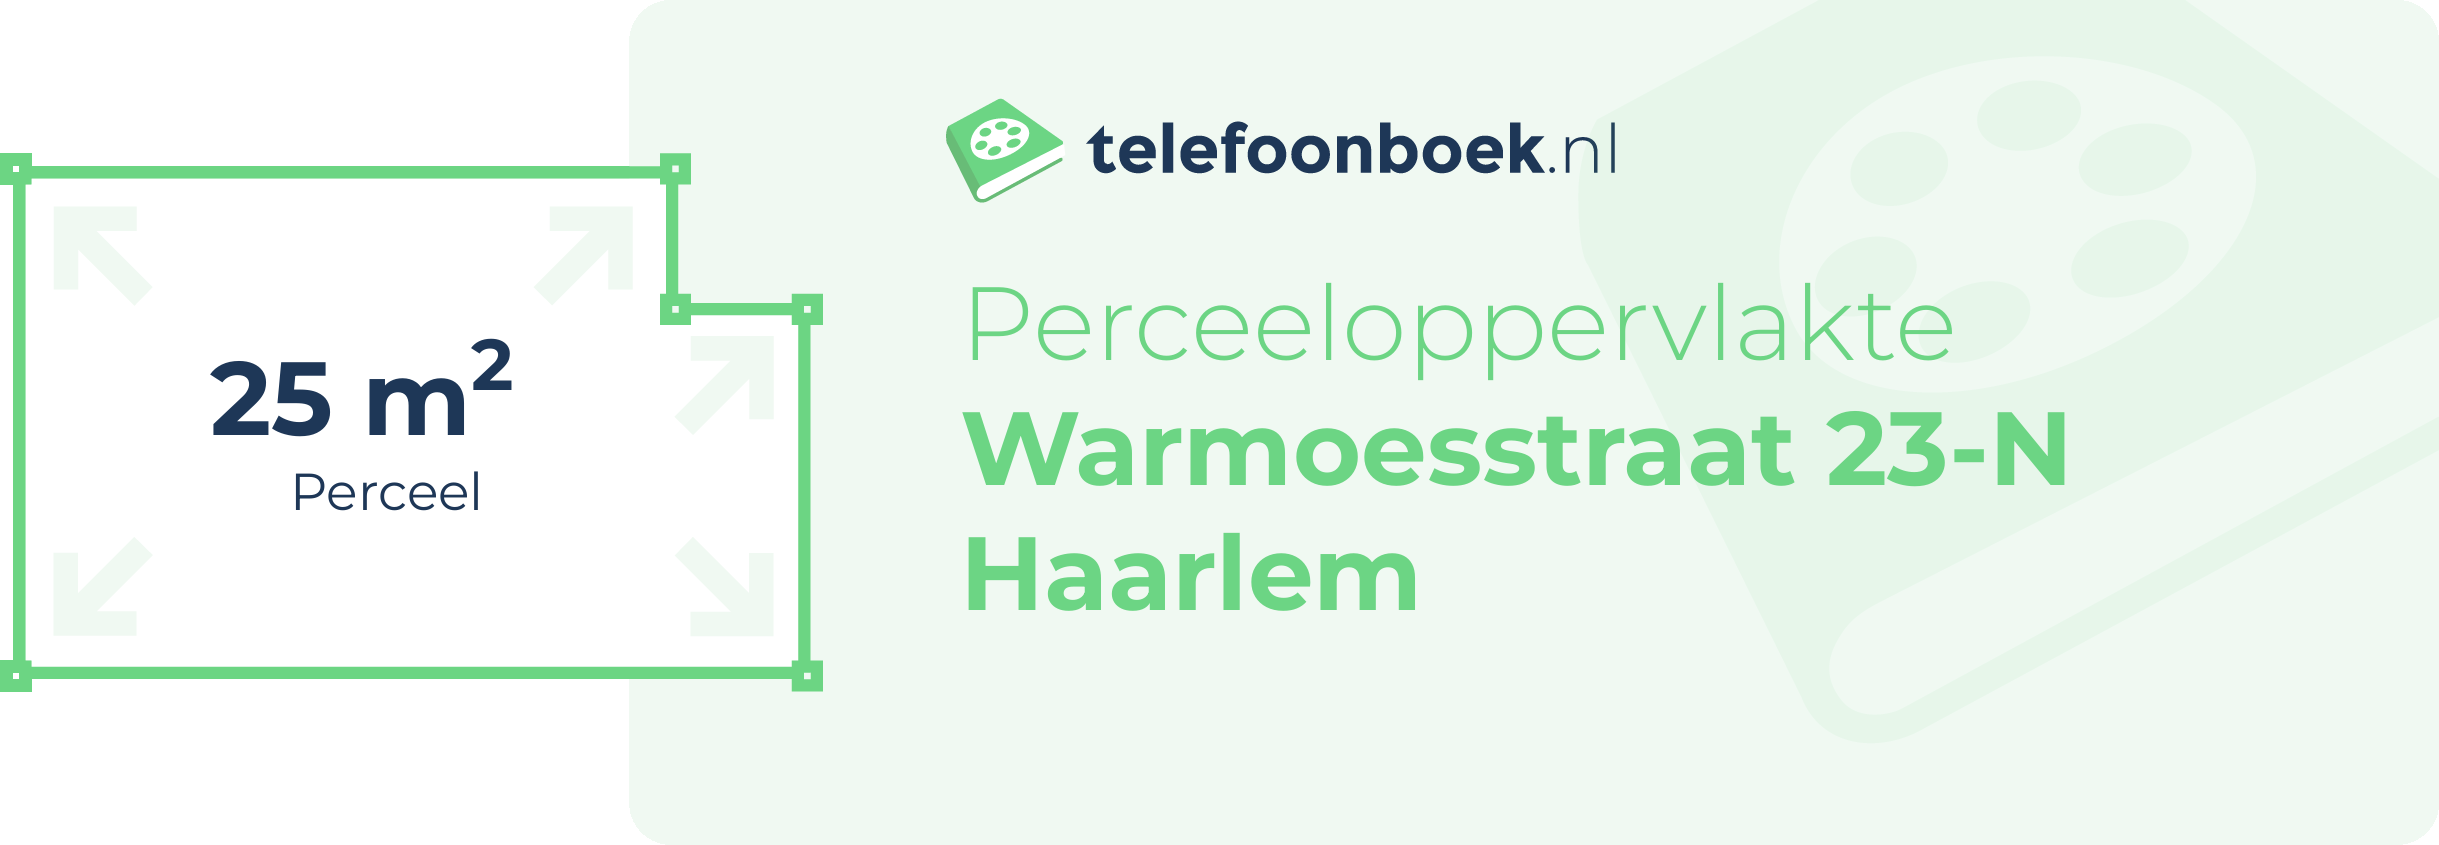 Perceeloppervlakte Warmoesstraat 23-N Haarlem